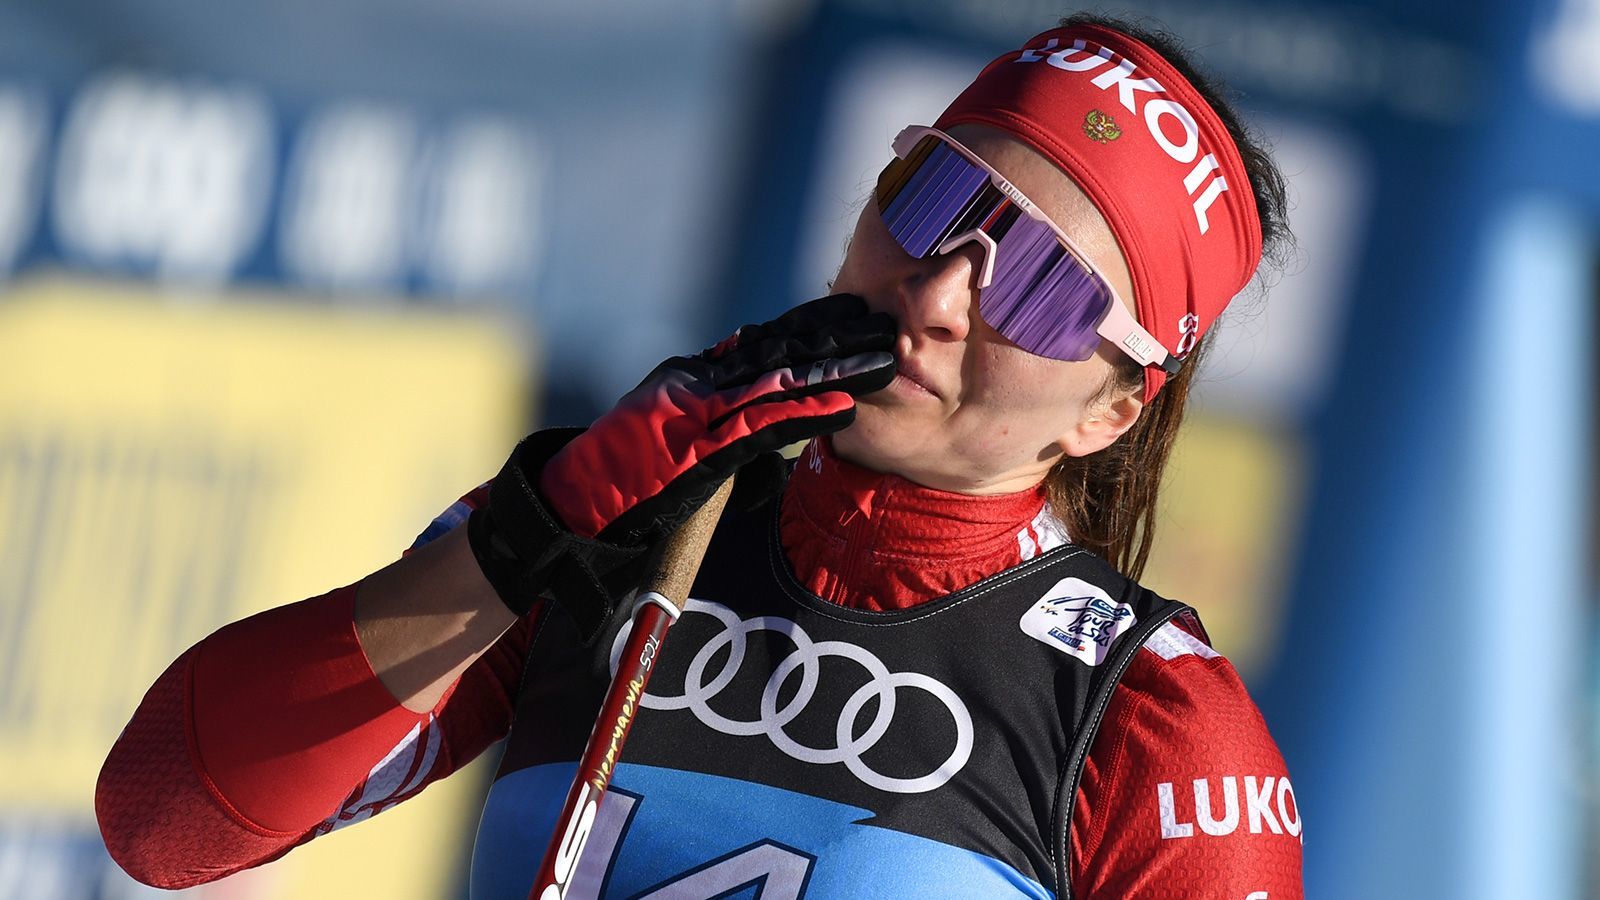 Непряева – о завершении карьеры Йохауг: ее уход прибавит интереса в женских лыжах